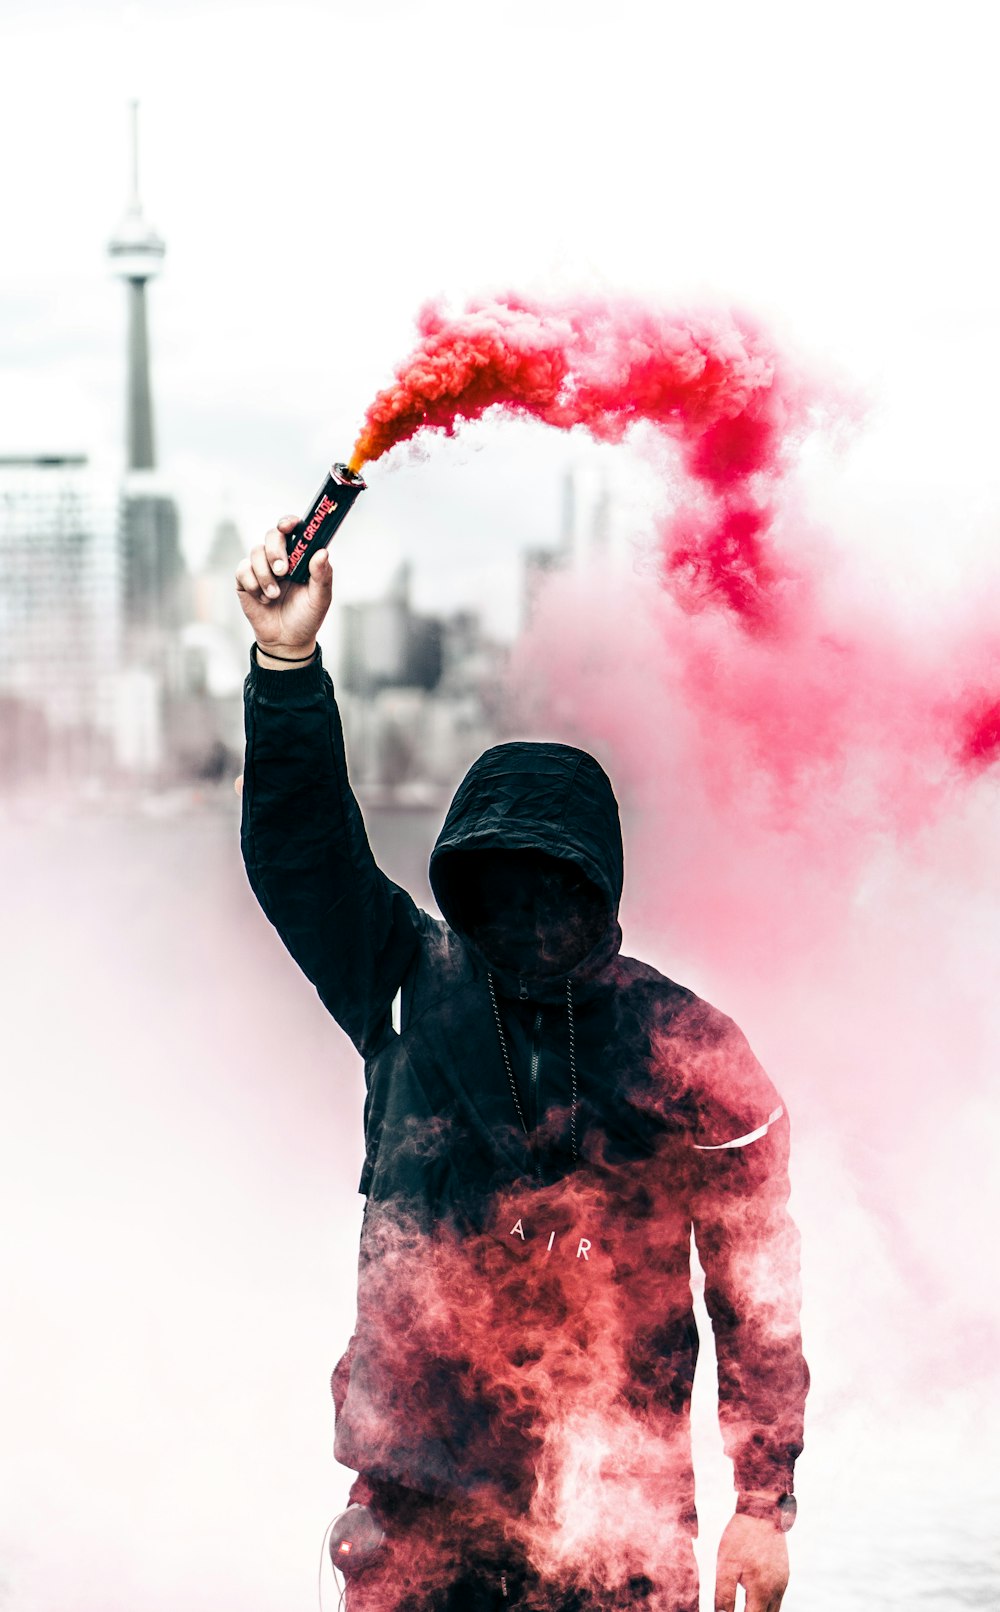 pessoa vestindo capuz preto e vermelho segurando bomba de fumaça